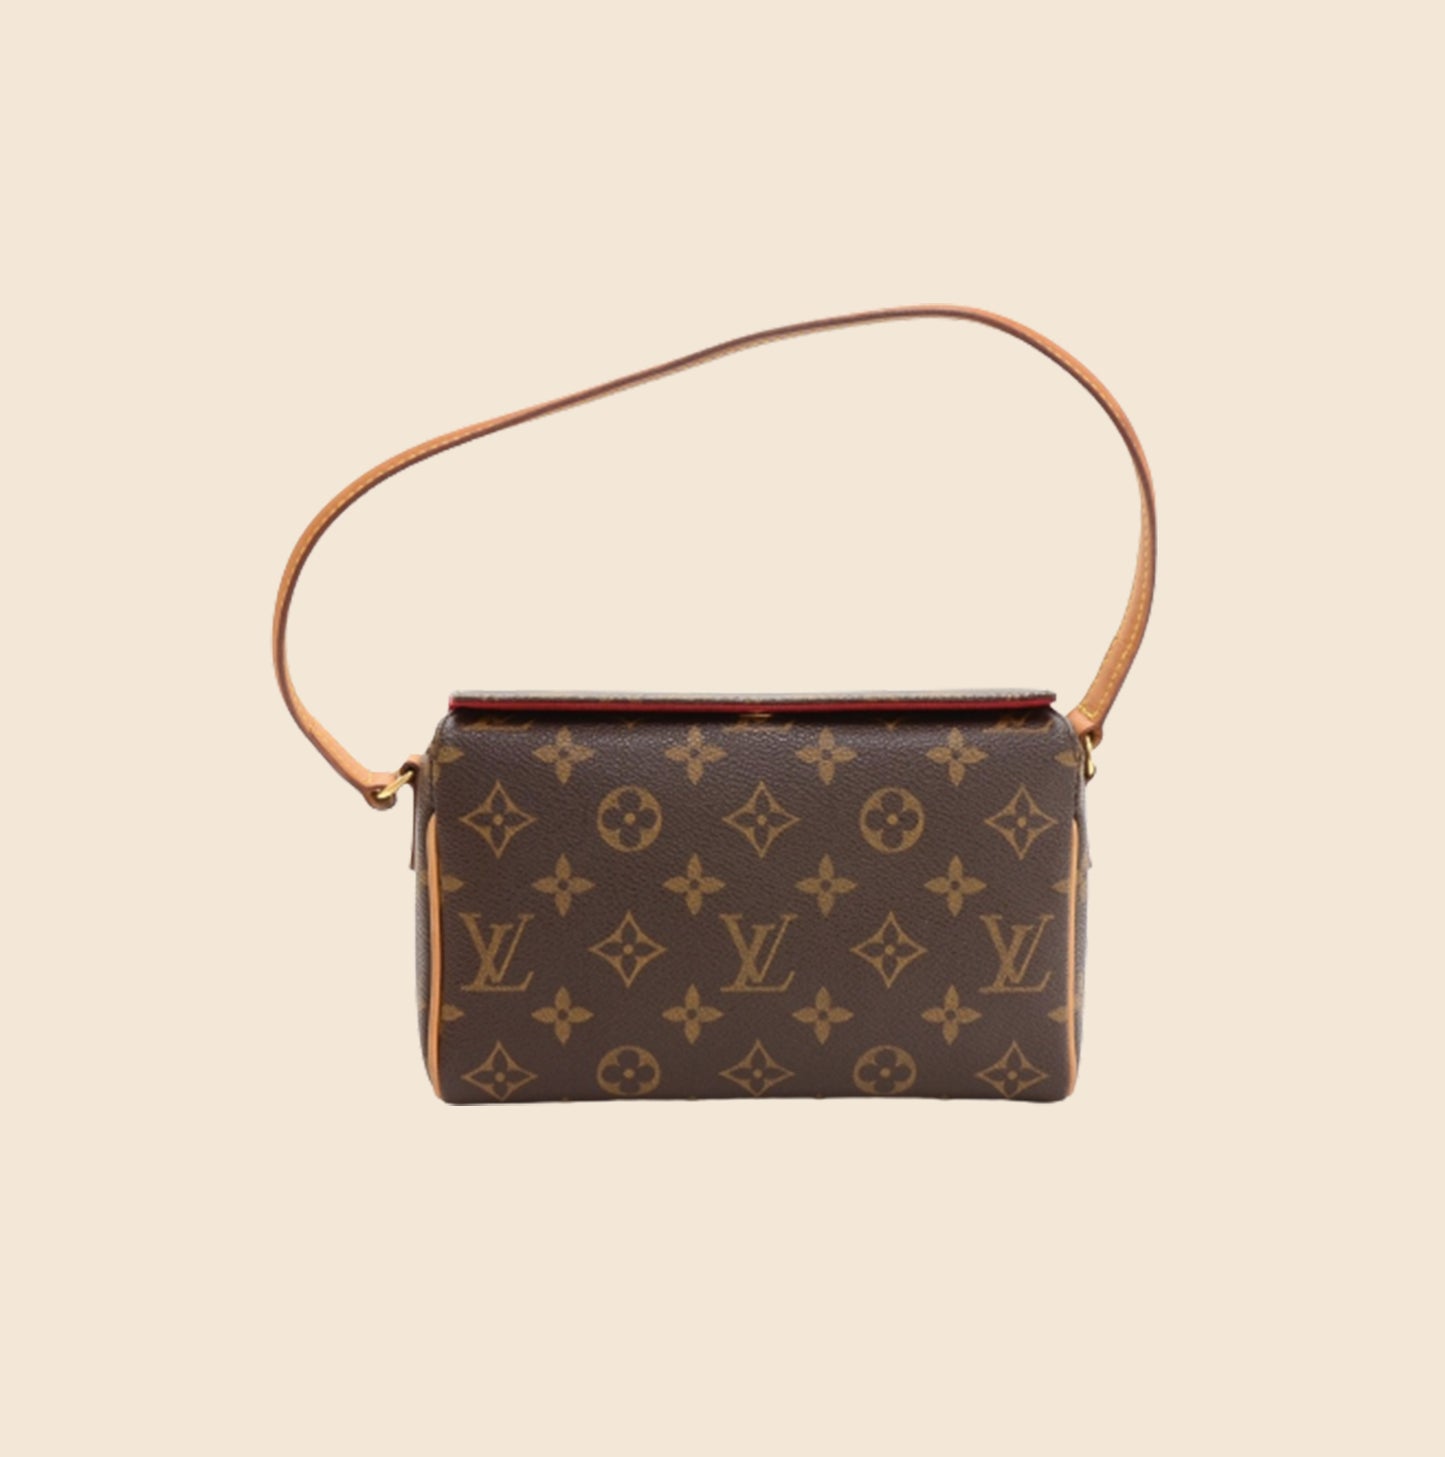 Preowned Louis Vuitton Recital Bag